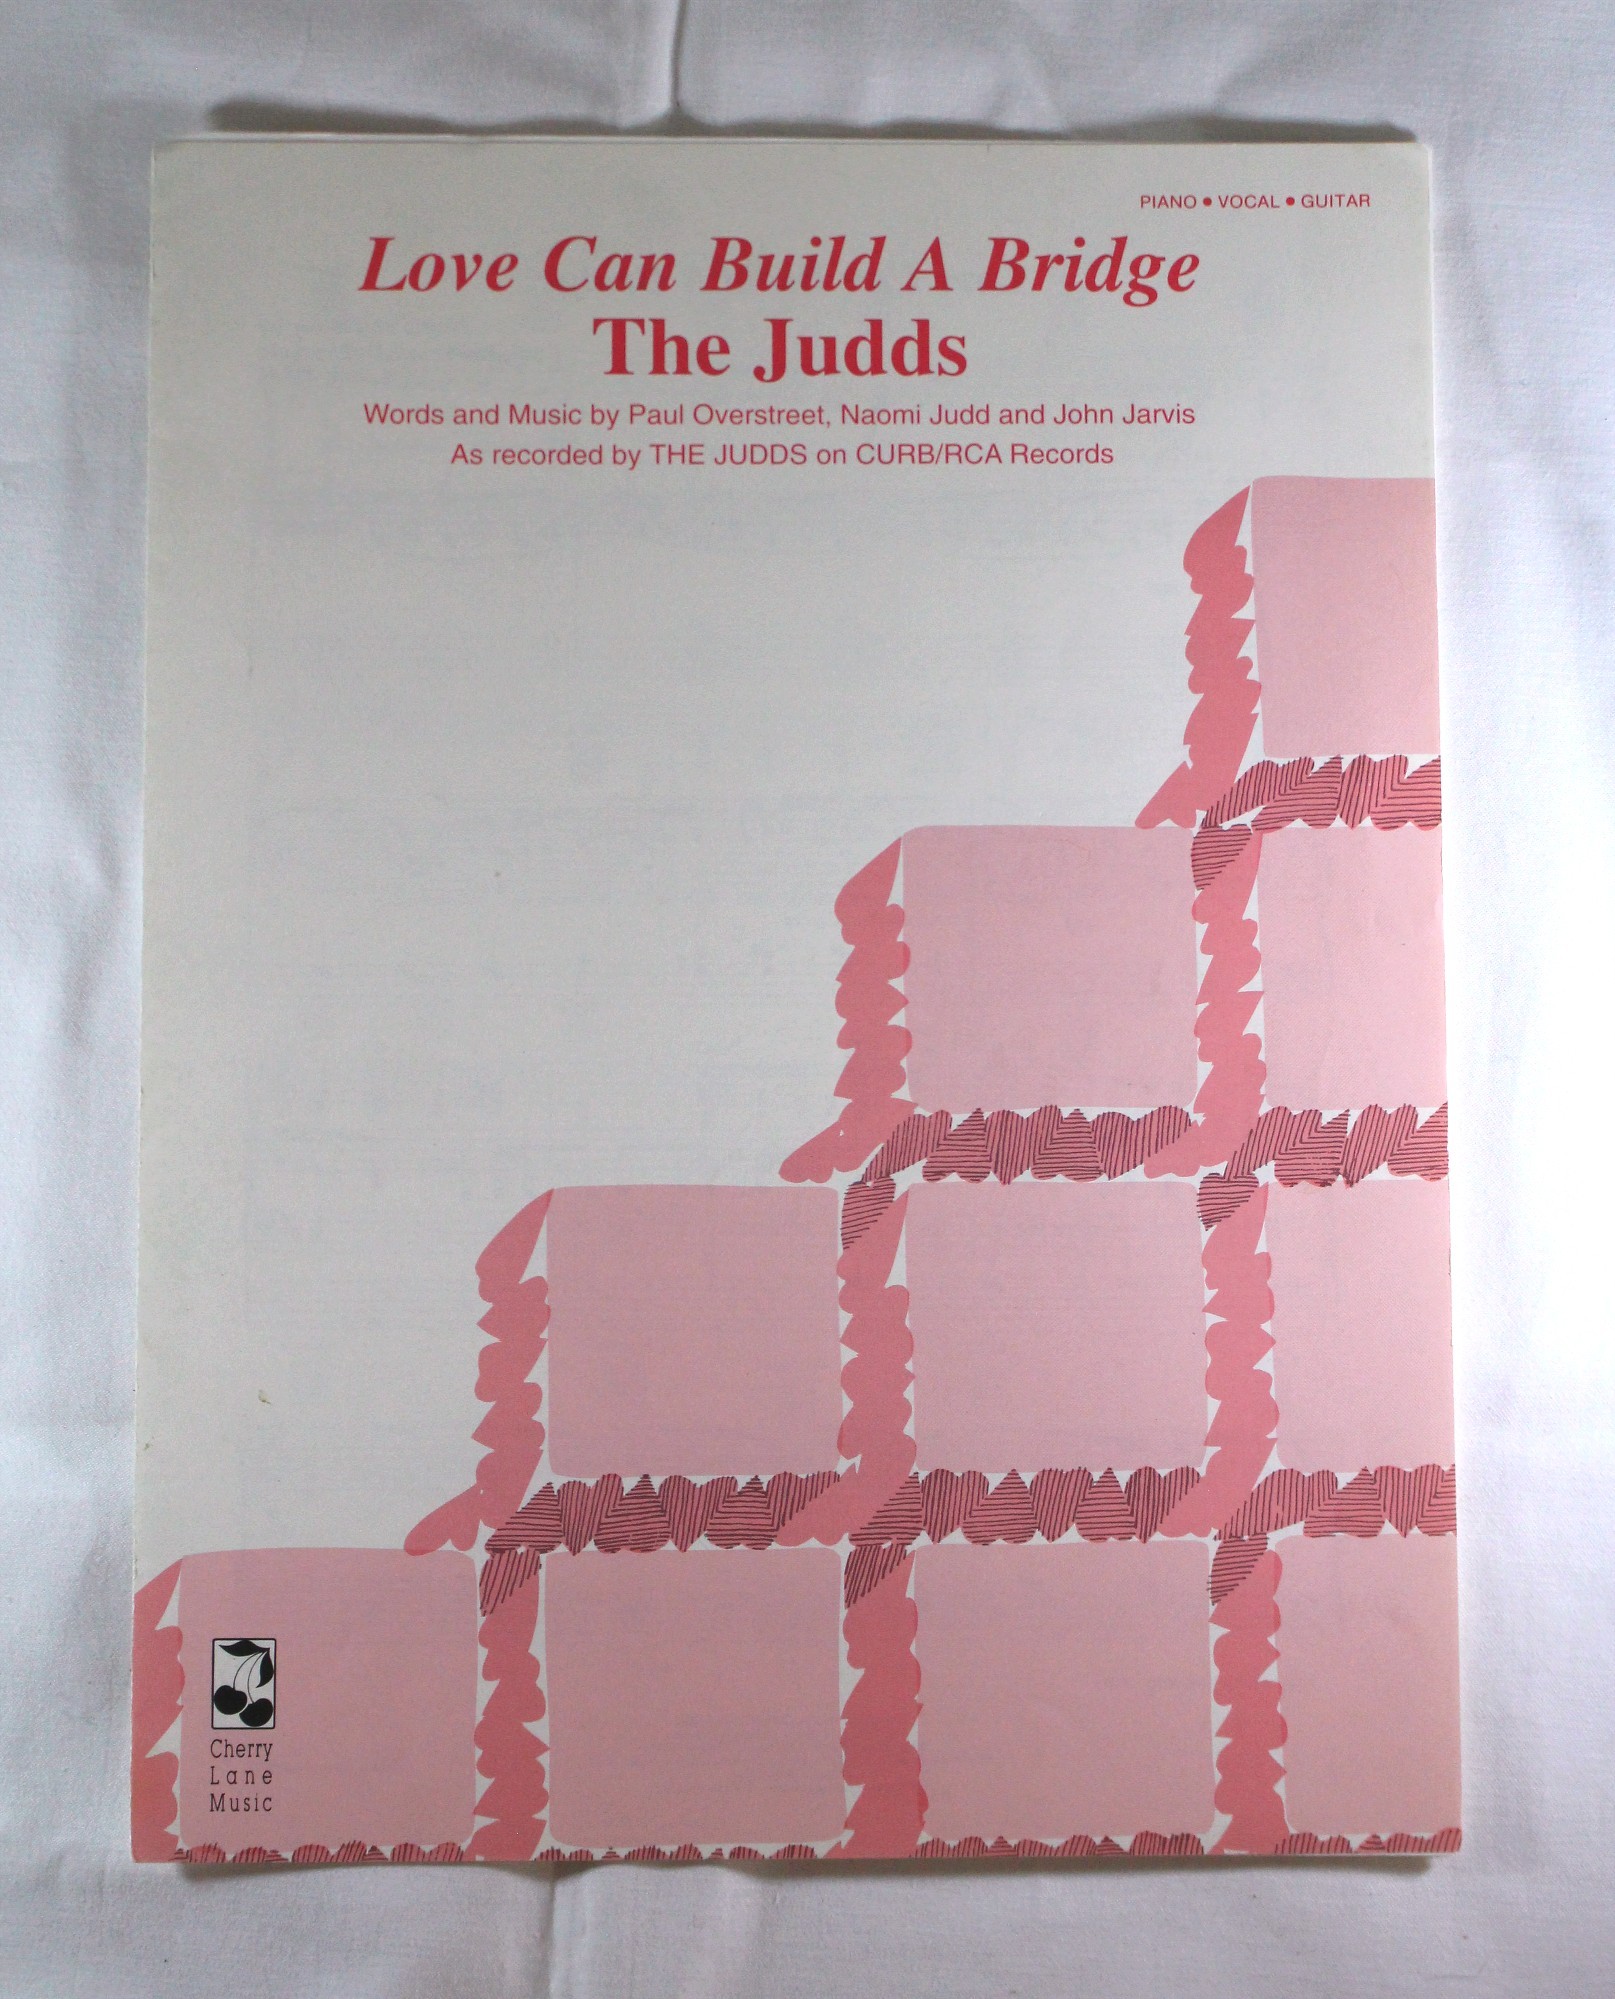 Judds - sheet music “Love Can Build A Bridge” 